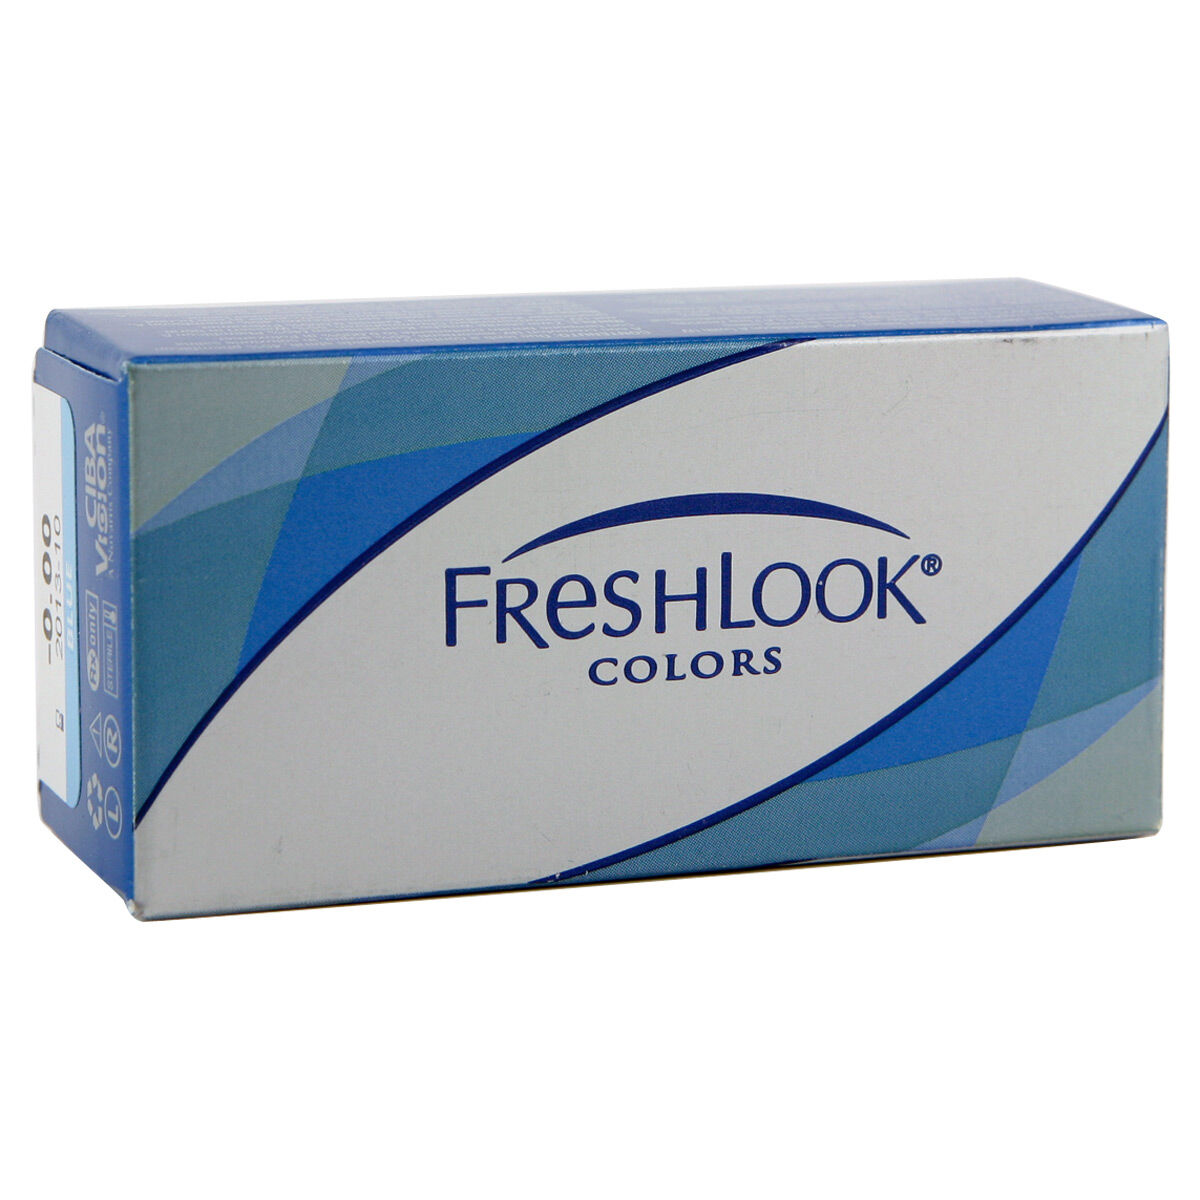 Alcon Freshlook Colors (2 Contact Lenses), CIBA Vision/Alcon, Coloured Contact Lenses, Phemfilcon A